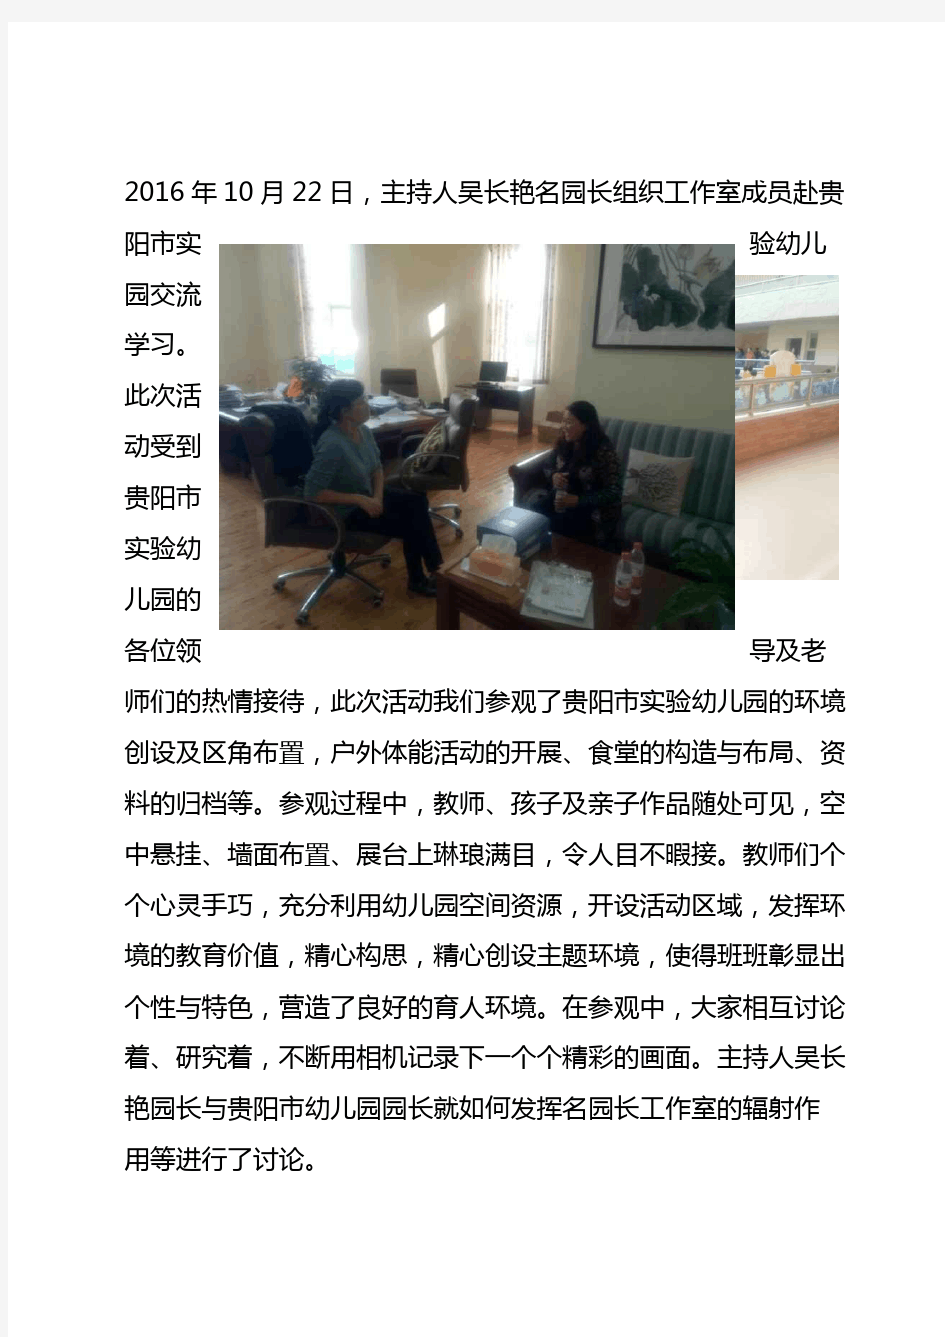 吴长艳名园长工作室赴贵阳市实验幼儿园交流学习活动简报